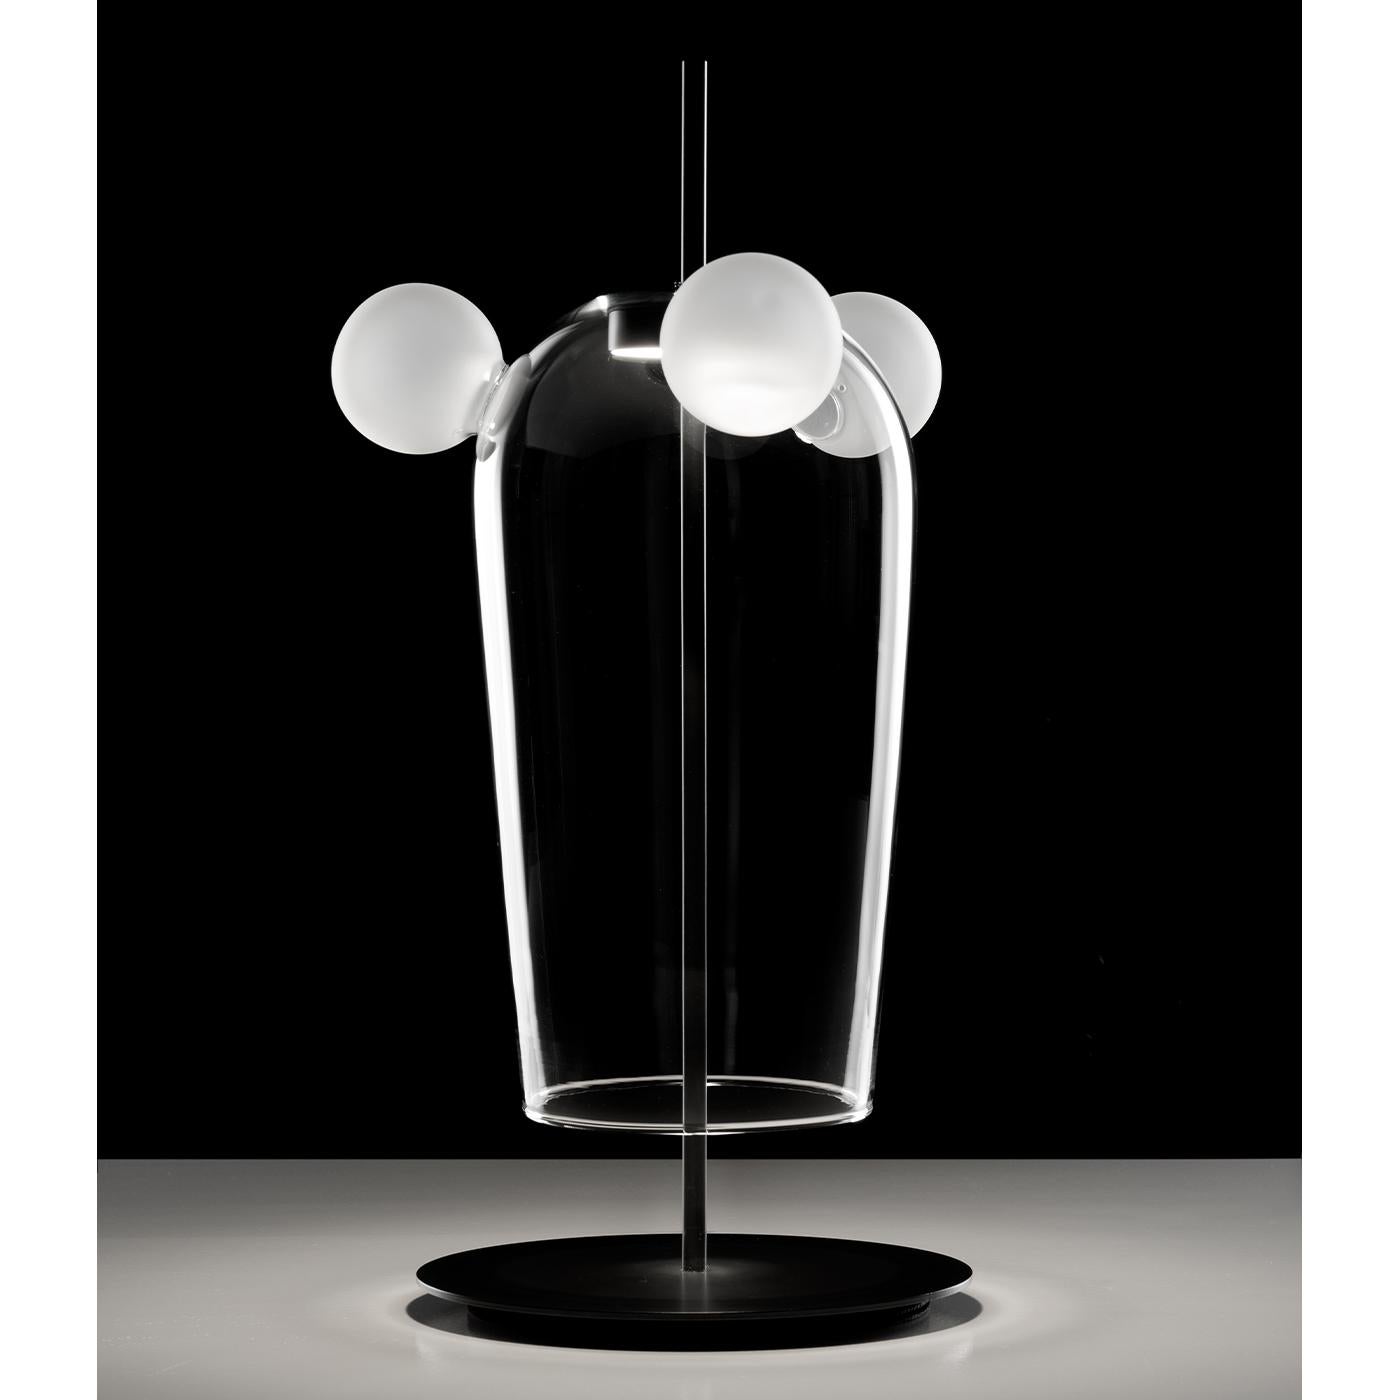 Son verre soufflé transparent en forme de cloche avec trois sphères givrées est un hommage à Bartolomeo Colleoni, un 